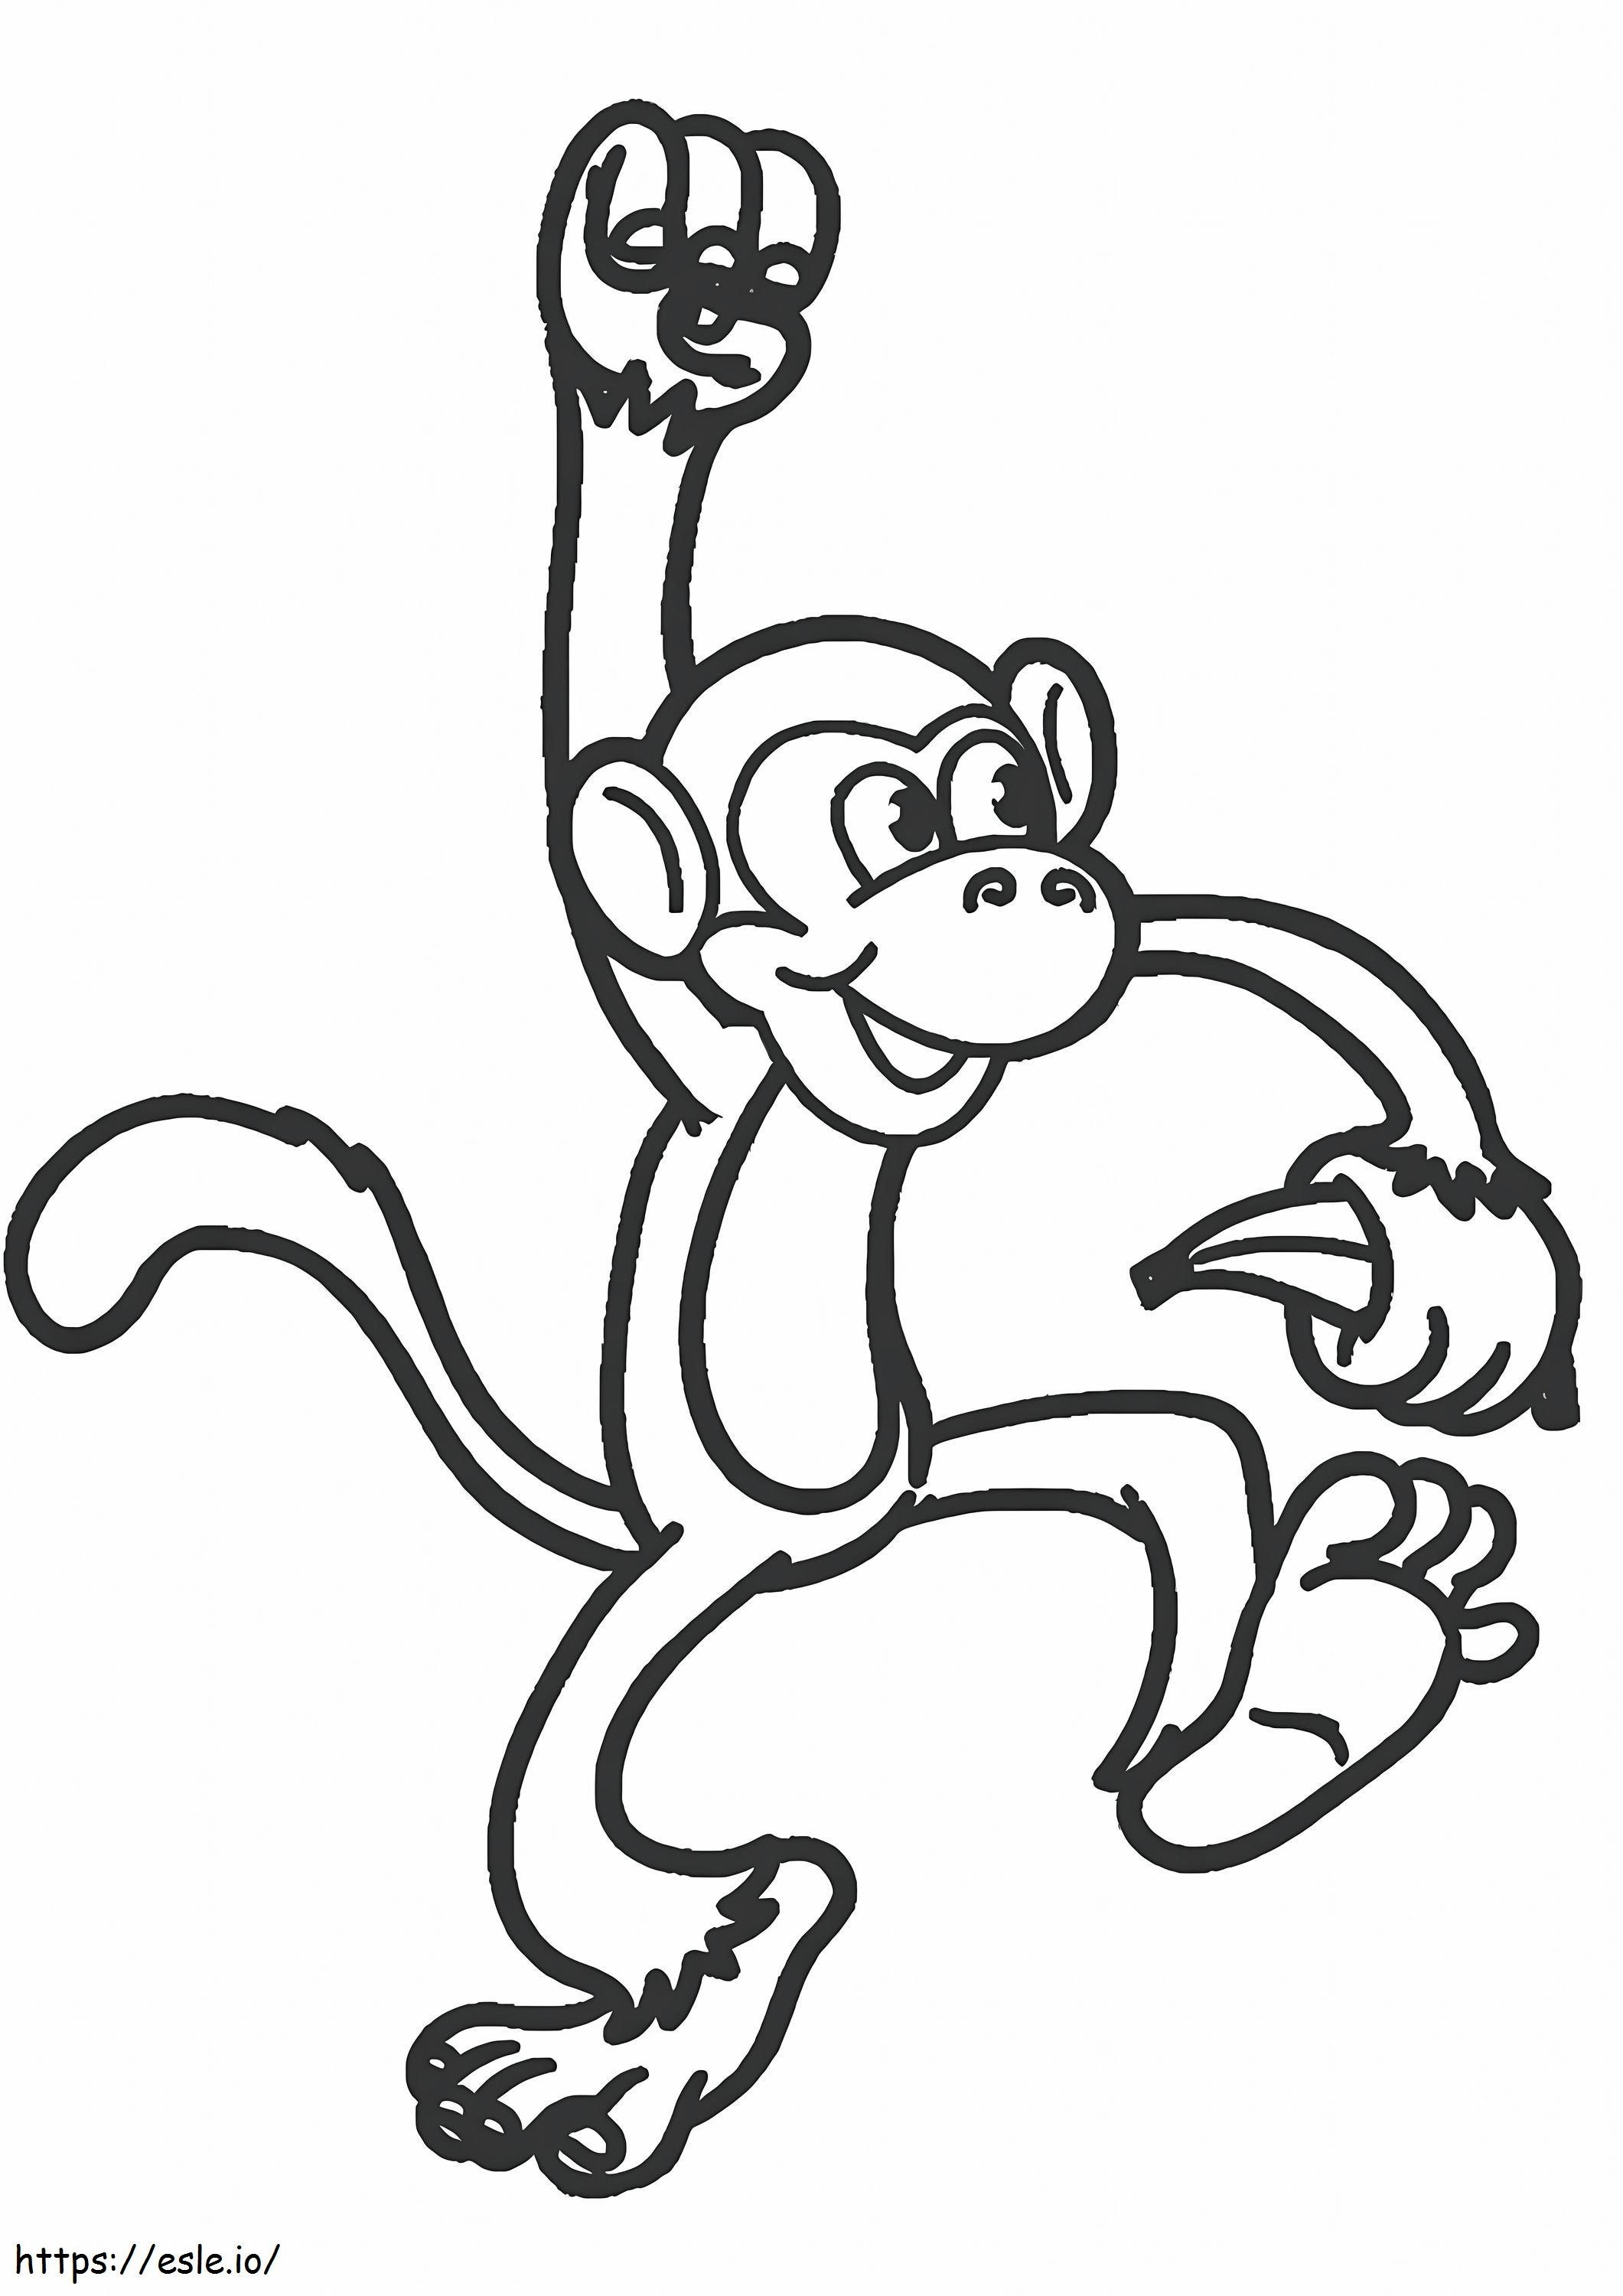 Macaco fácil comendo banana para colorir